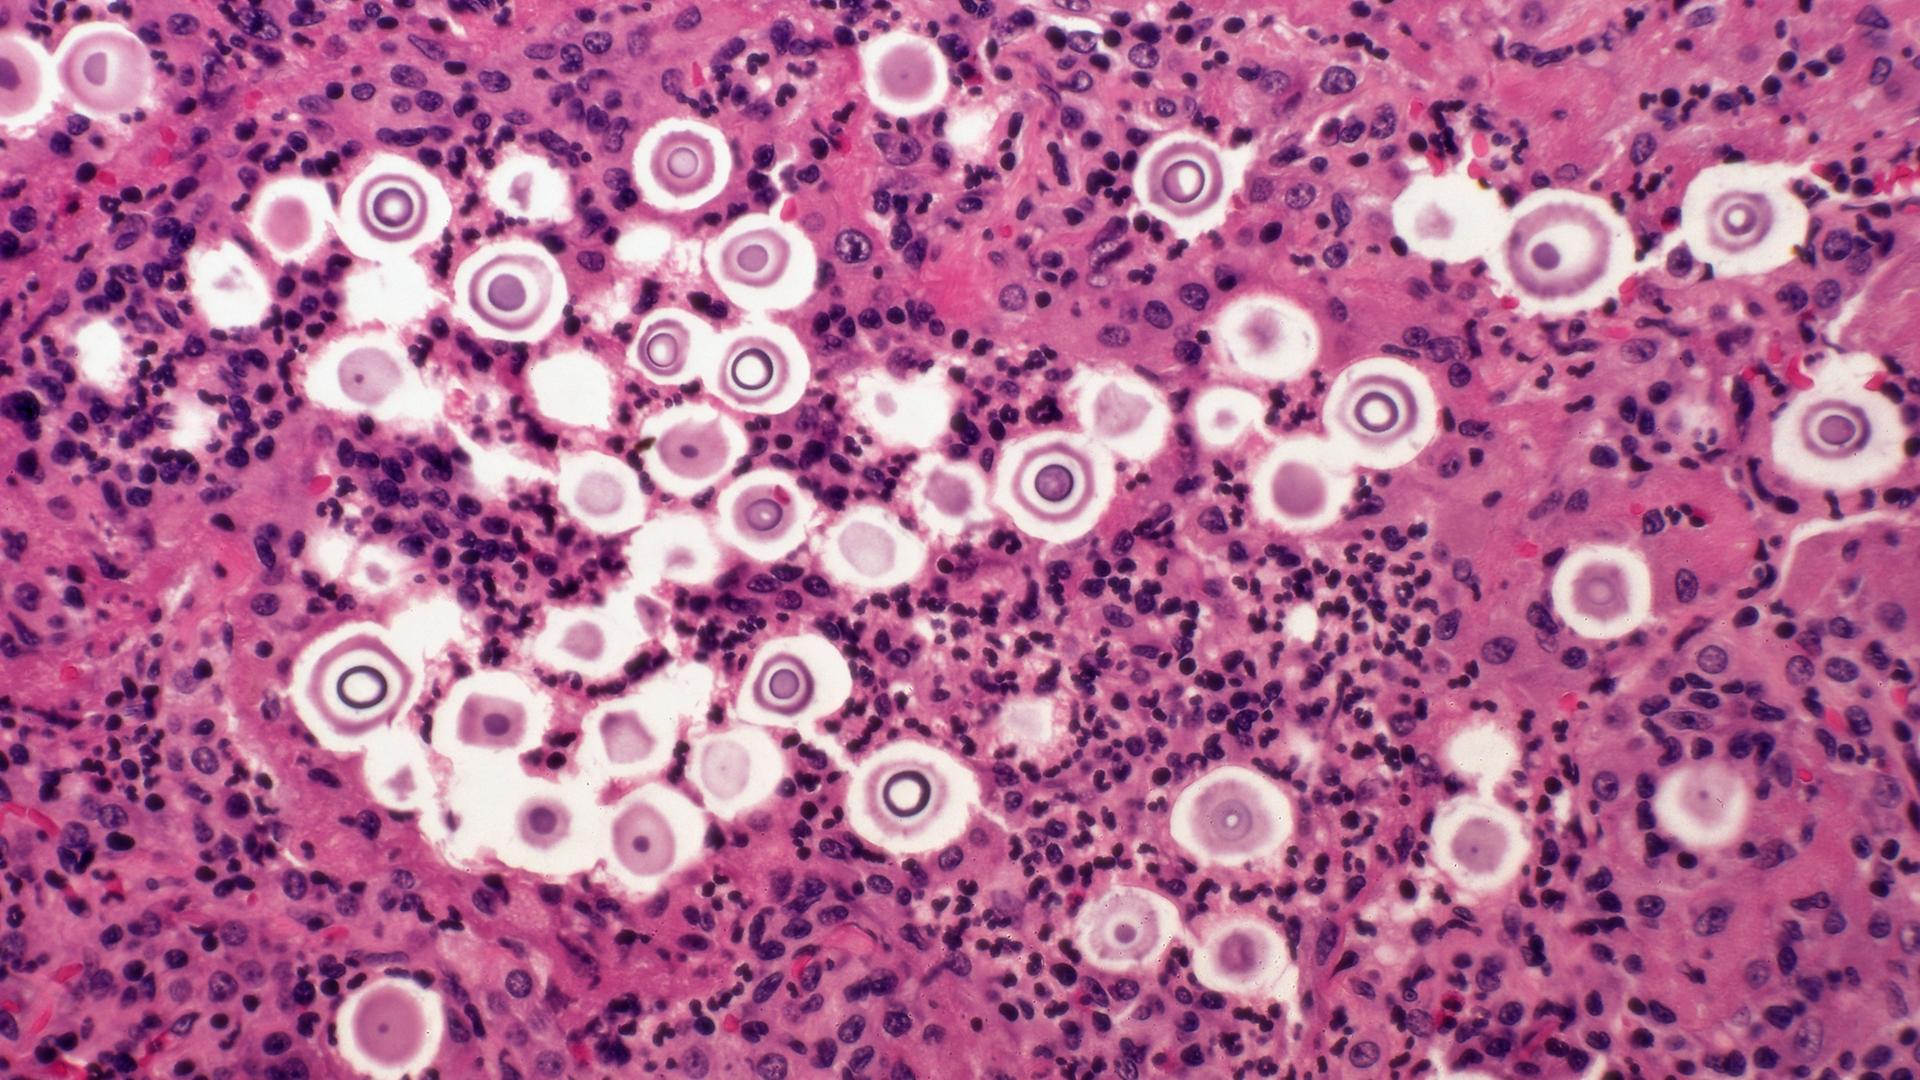 Vergößerte Aufnahme: Pilzinfektion der Lunge mit Cryptococcus neoformans.